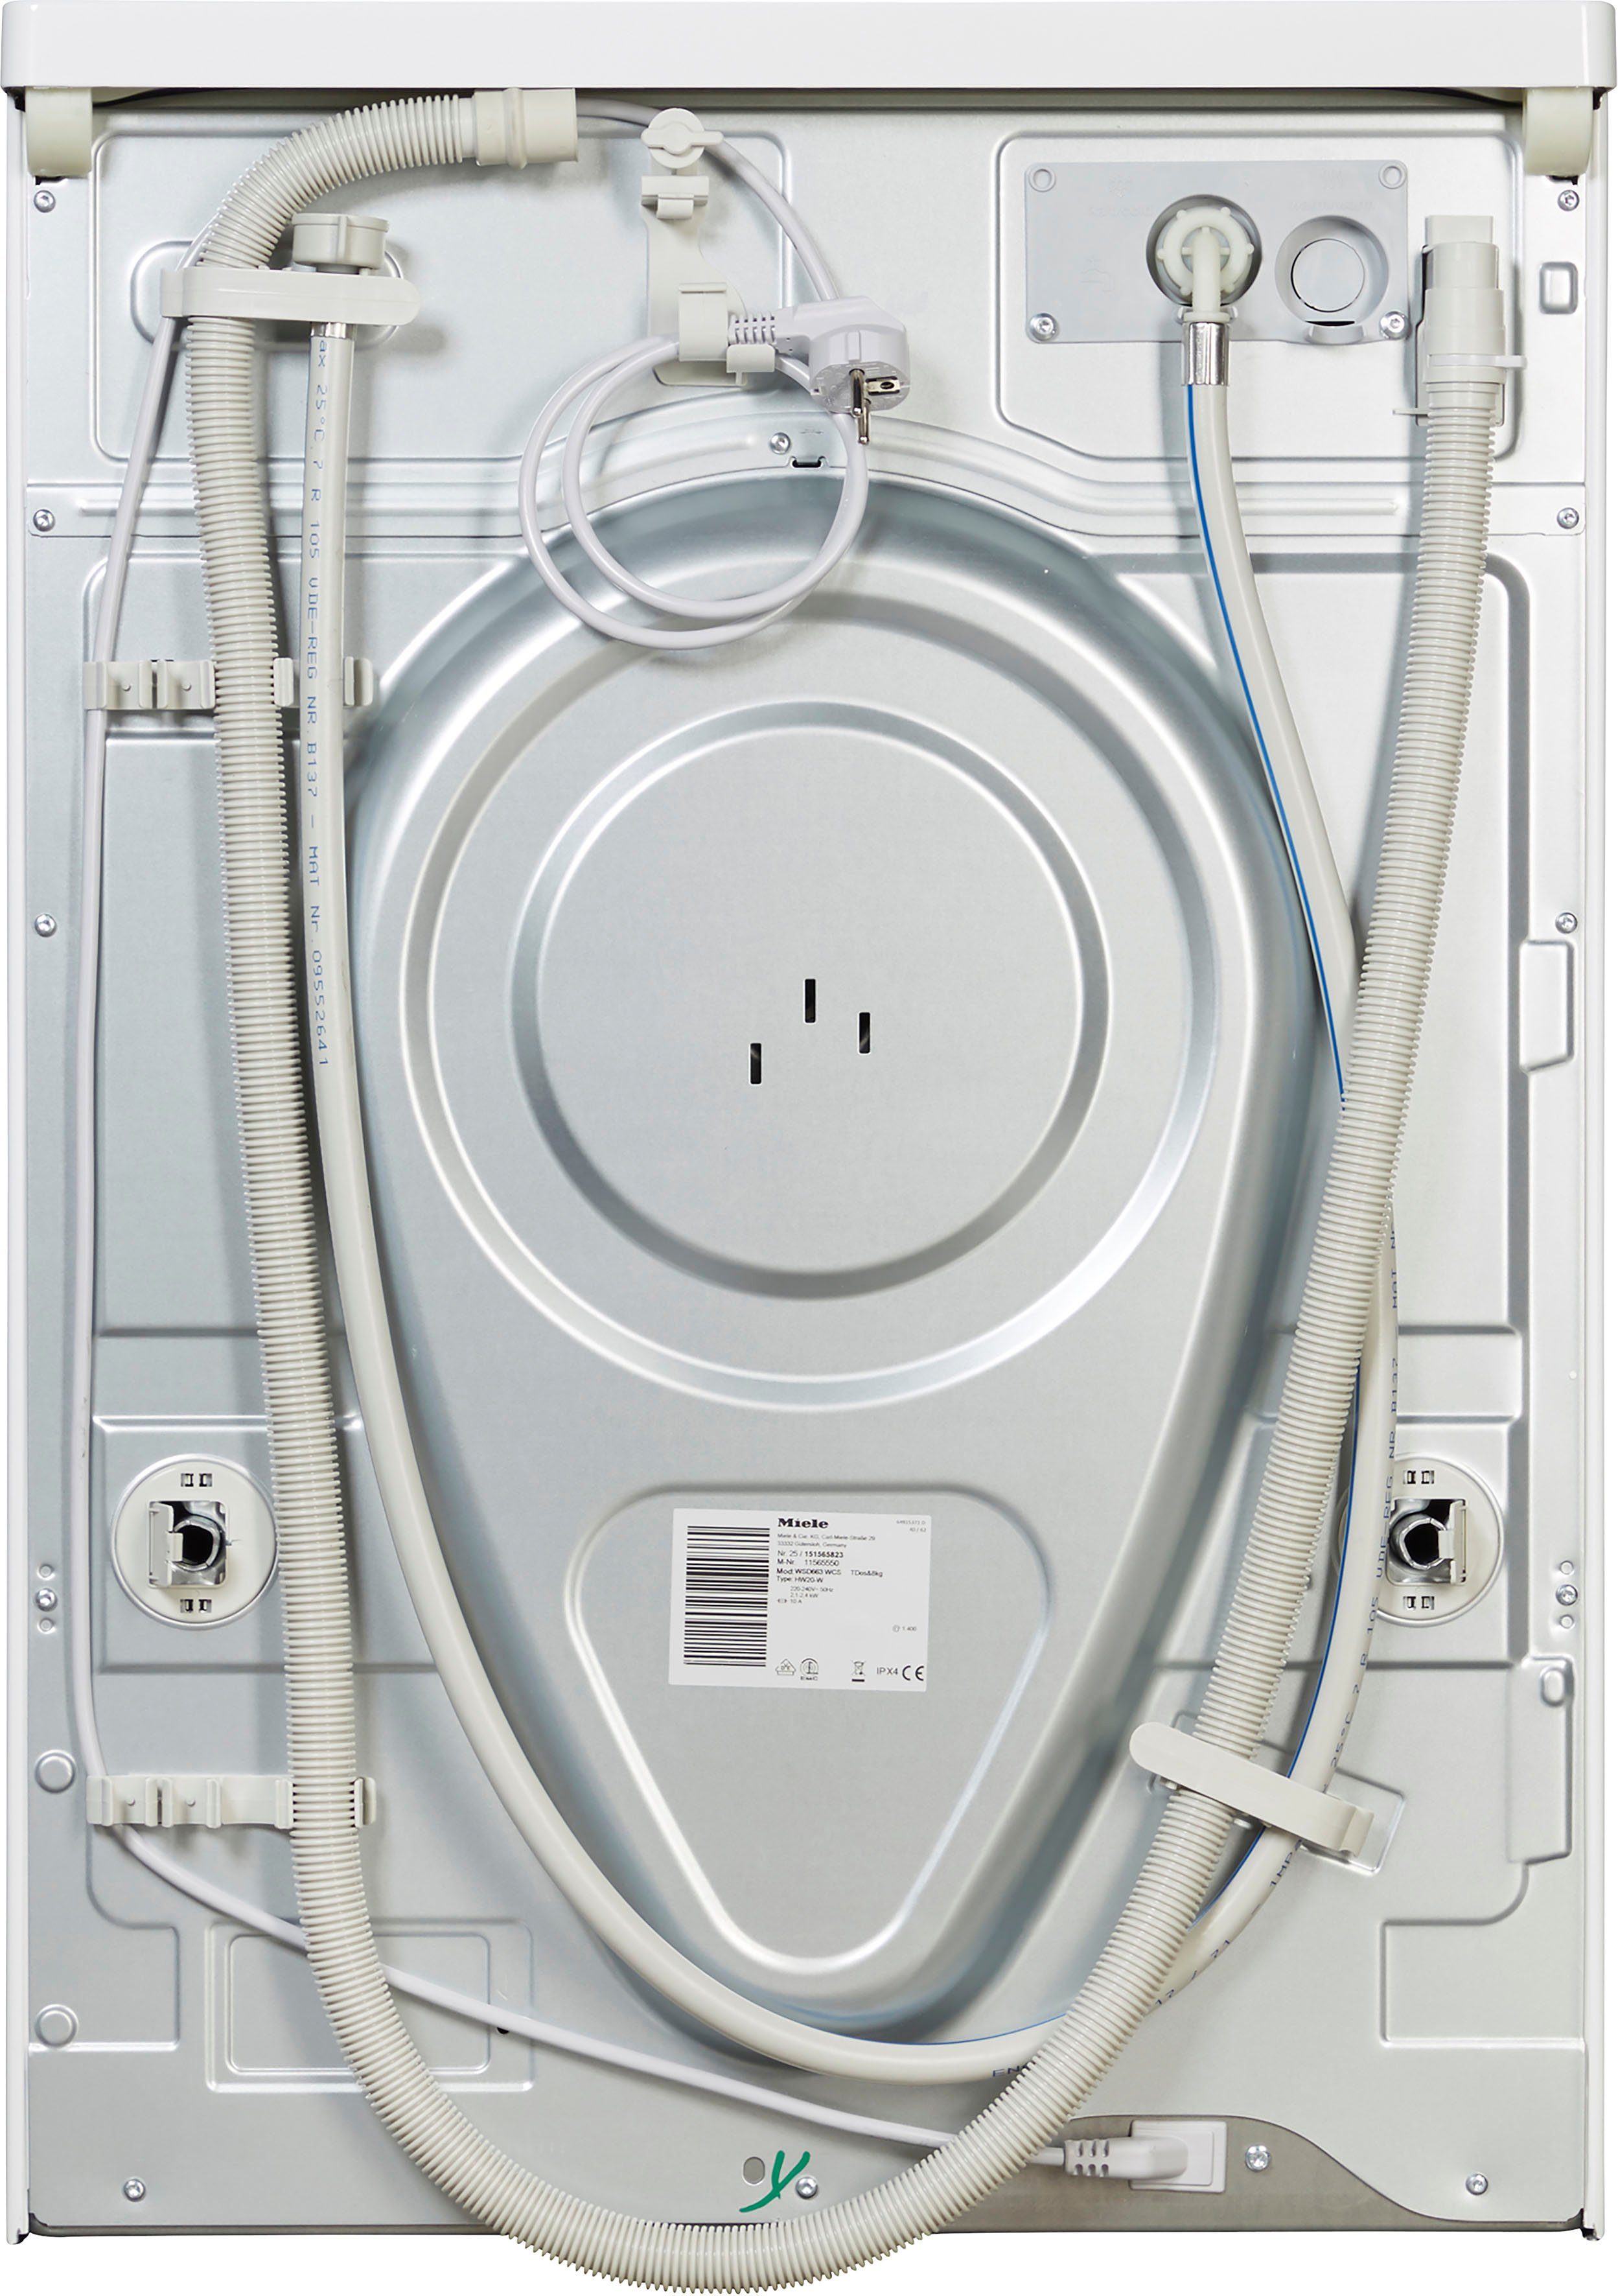 Miele Waschmaschine ModernLife automatischen zur U/min, TDos&8kg, kg, 1400 8 Waschmitteldosierung TwinDos WCS WSD663